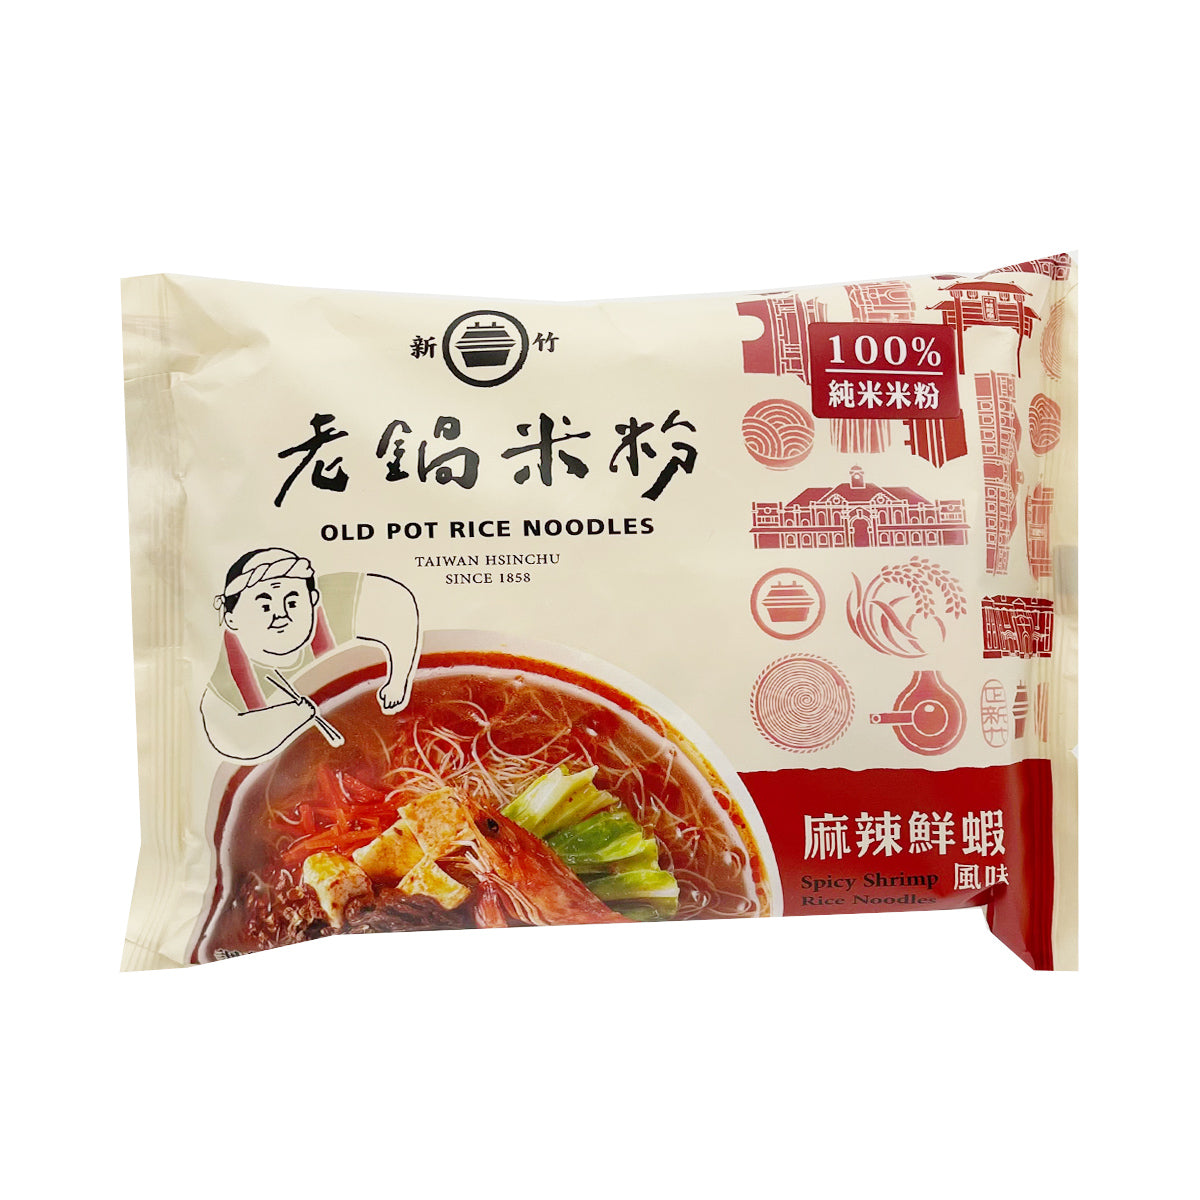 【OLD POT RICE NOODLES】Spicy Shrimp Rice Noodle Soup 60g